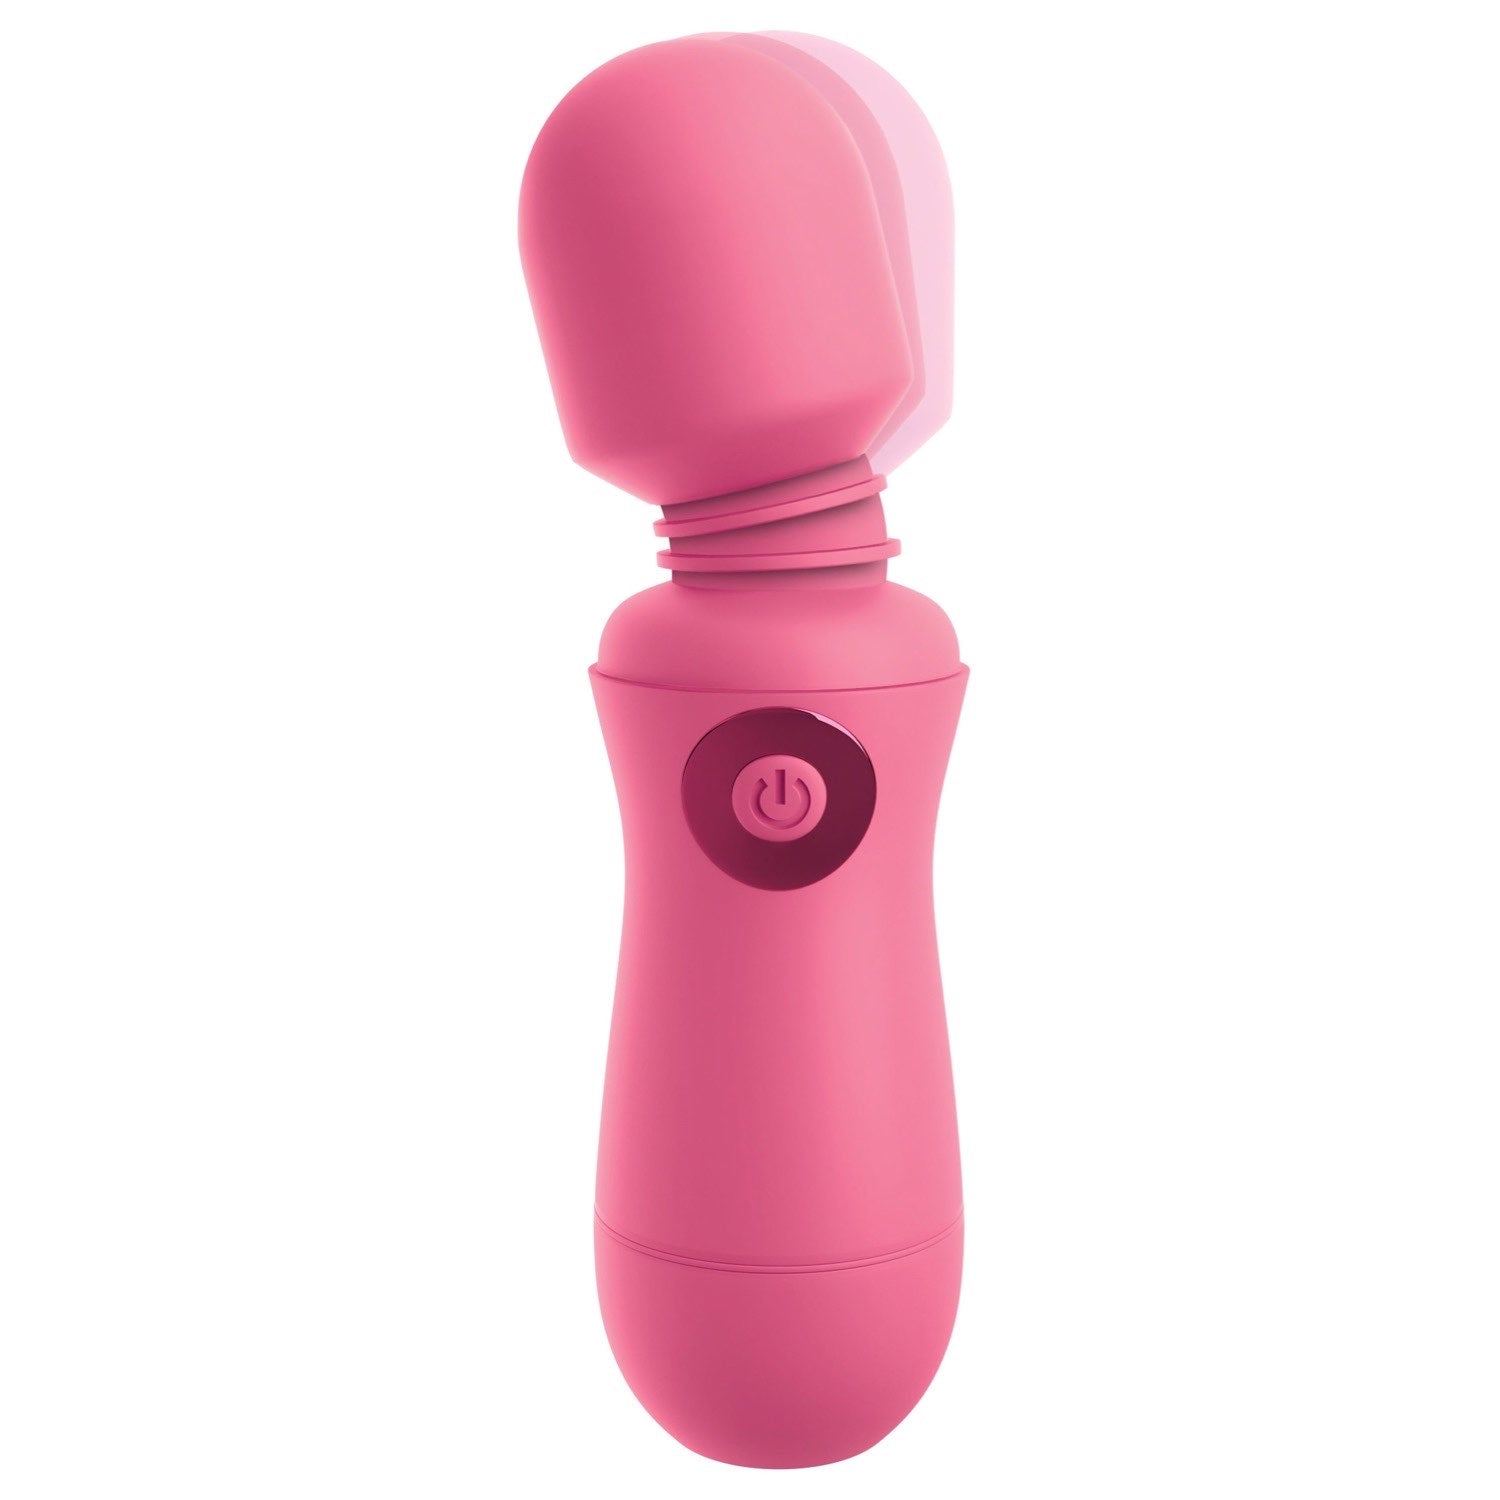 我的天啊！ 我的天啊！魔杖 #Enjoy - 粉色 USB 充电按摩棒 by Pipedream